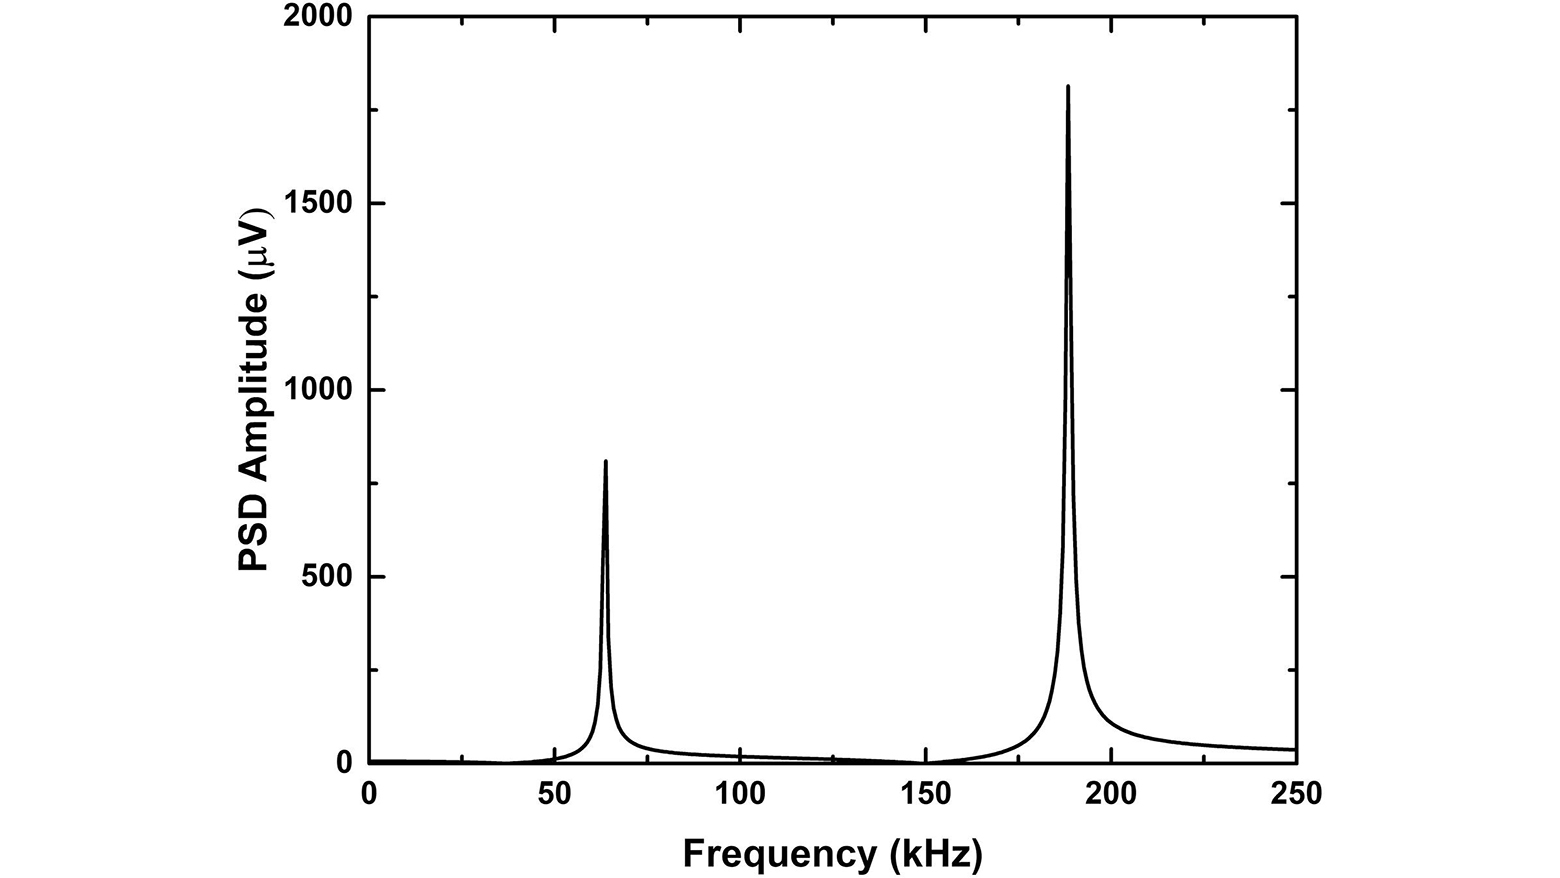 Berechnete spektrale Leistungsdichte (PSD) der Tragarm-Ablenkungsreaktion